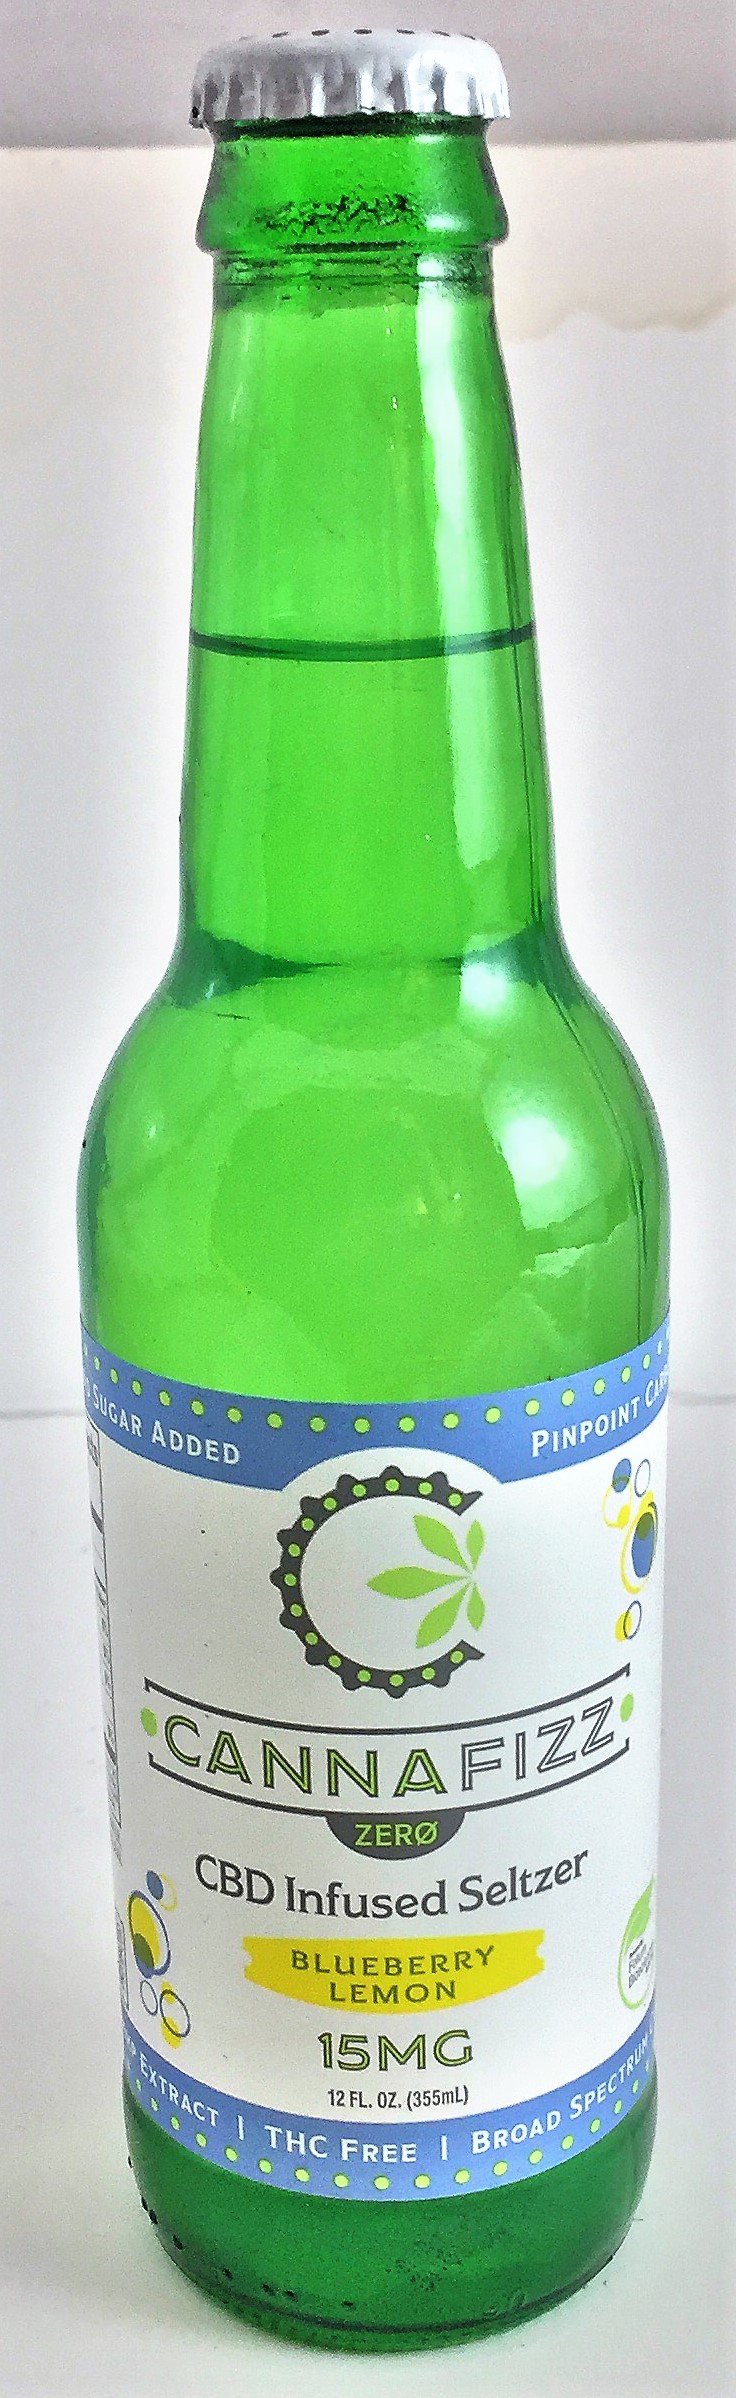 Single Green Bottle of Cannafizz 